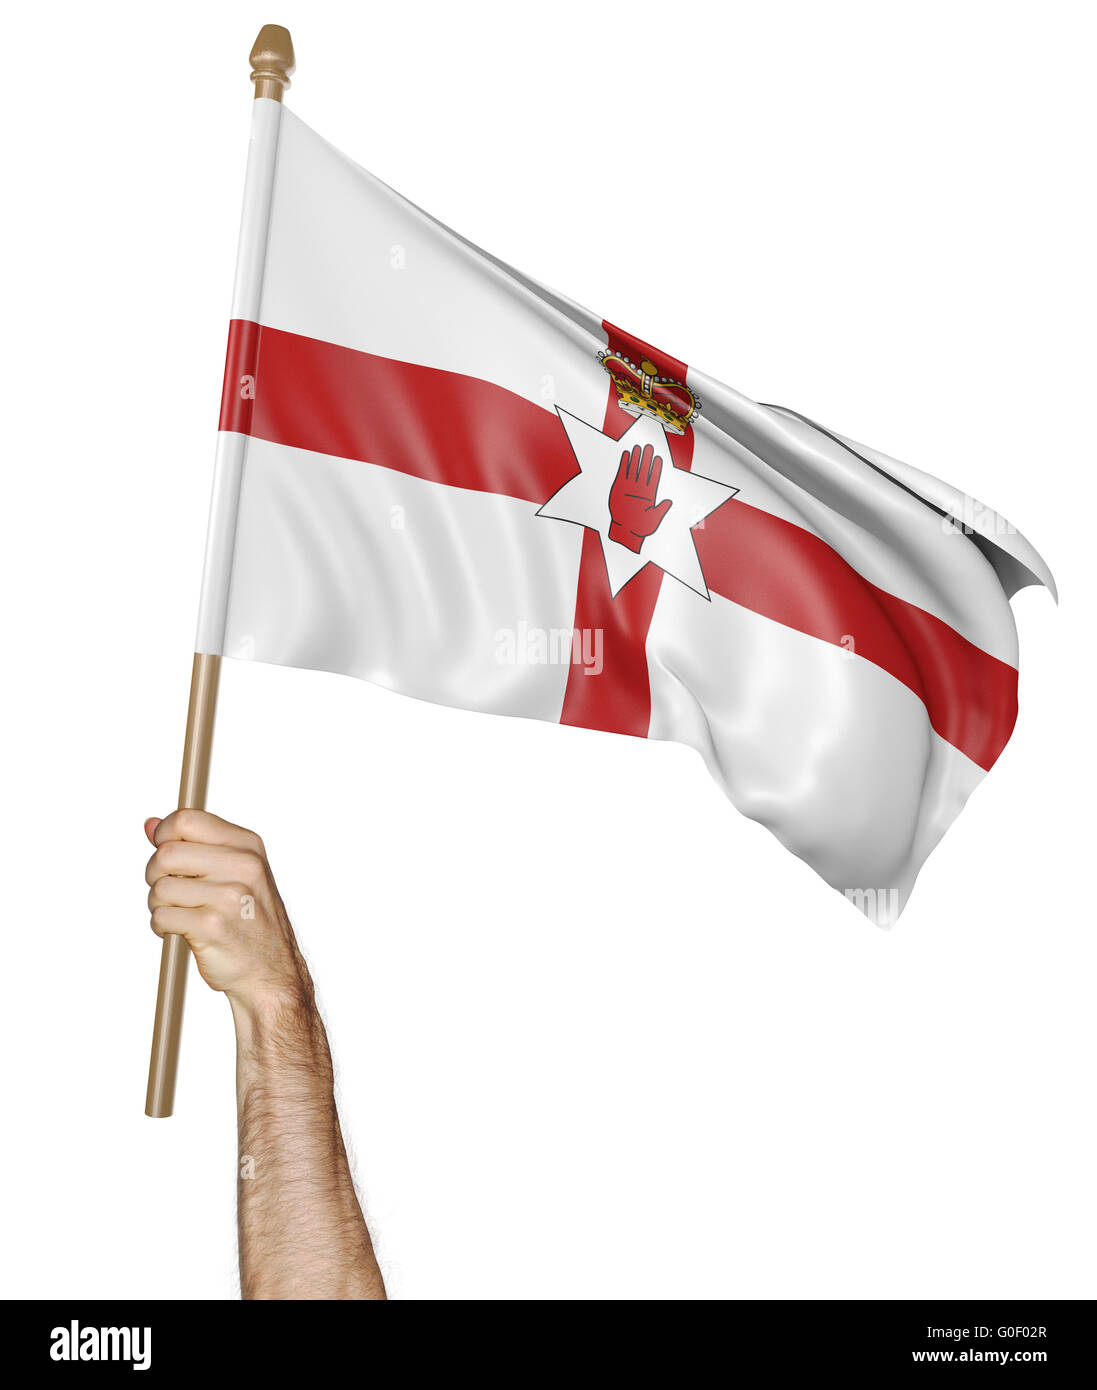 Brandissant fièrement à la main le drapeau national de l'Irlande du Nord, 3D Rendering Banque D'Images